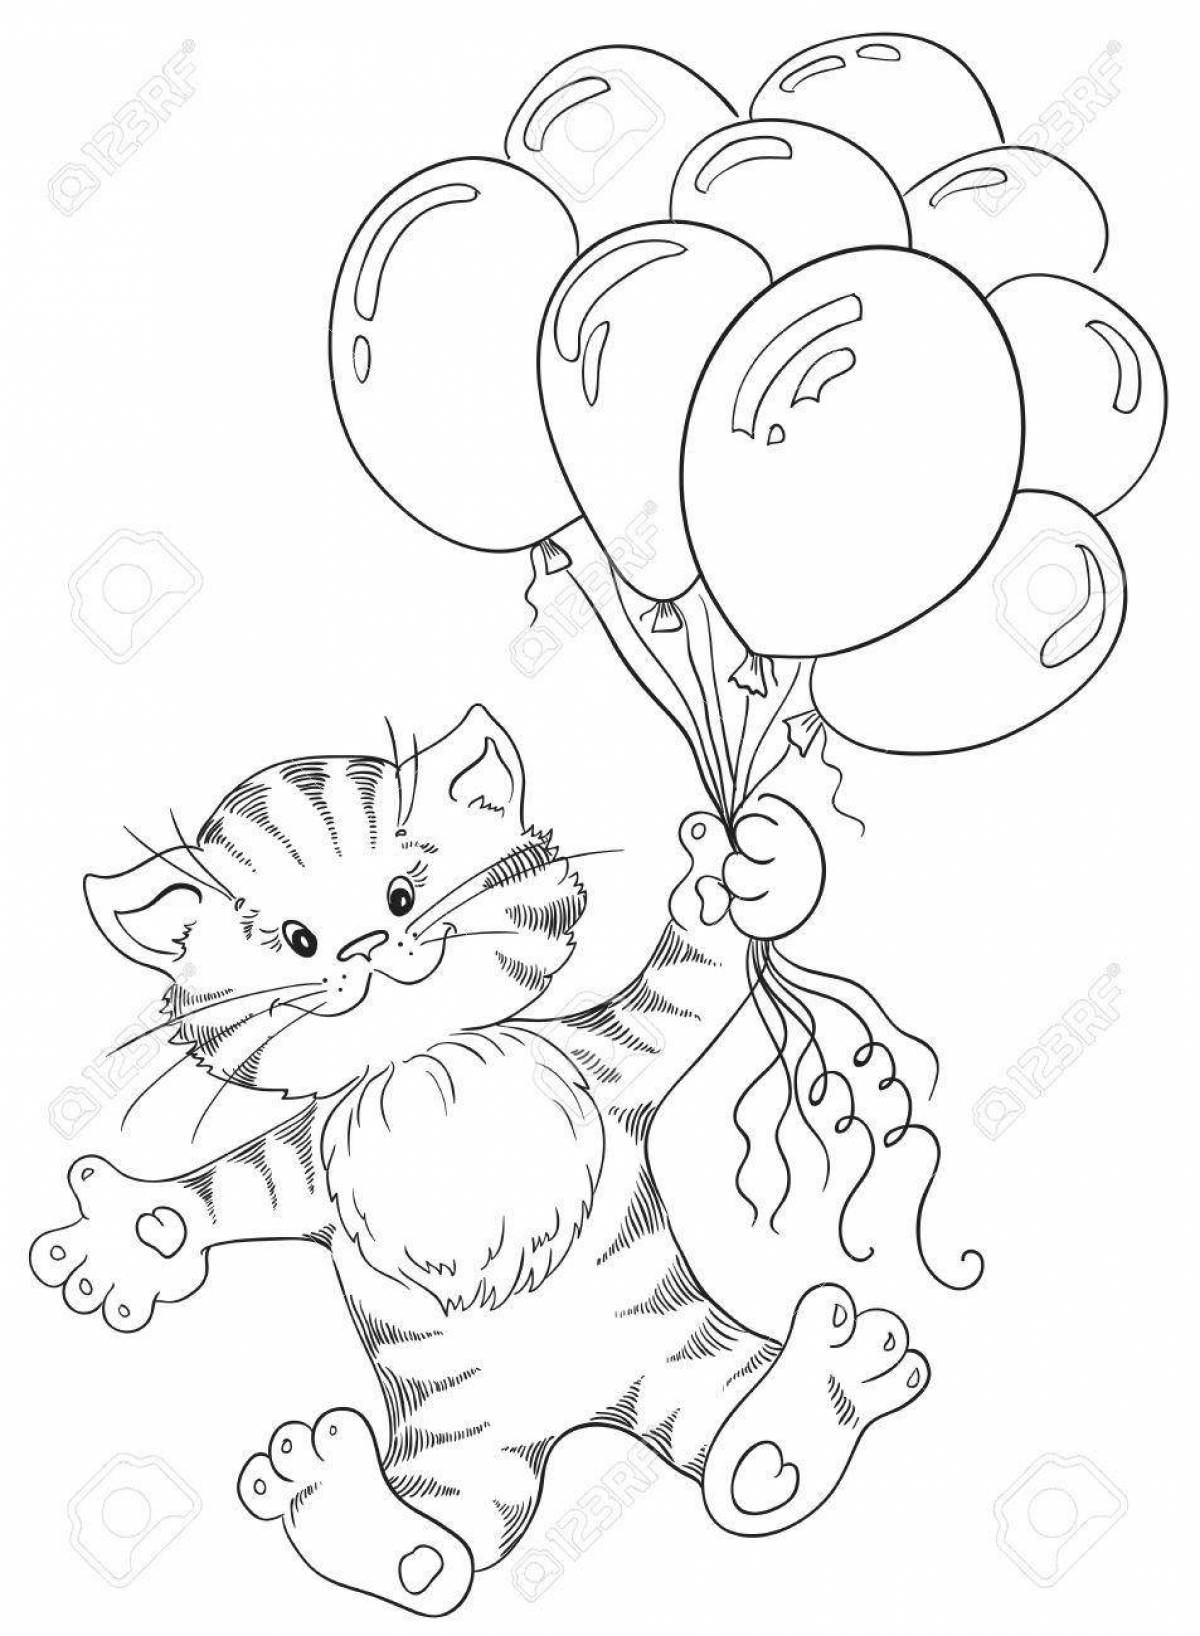 Котик с шариками #3